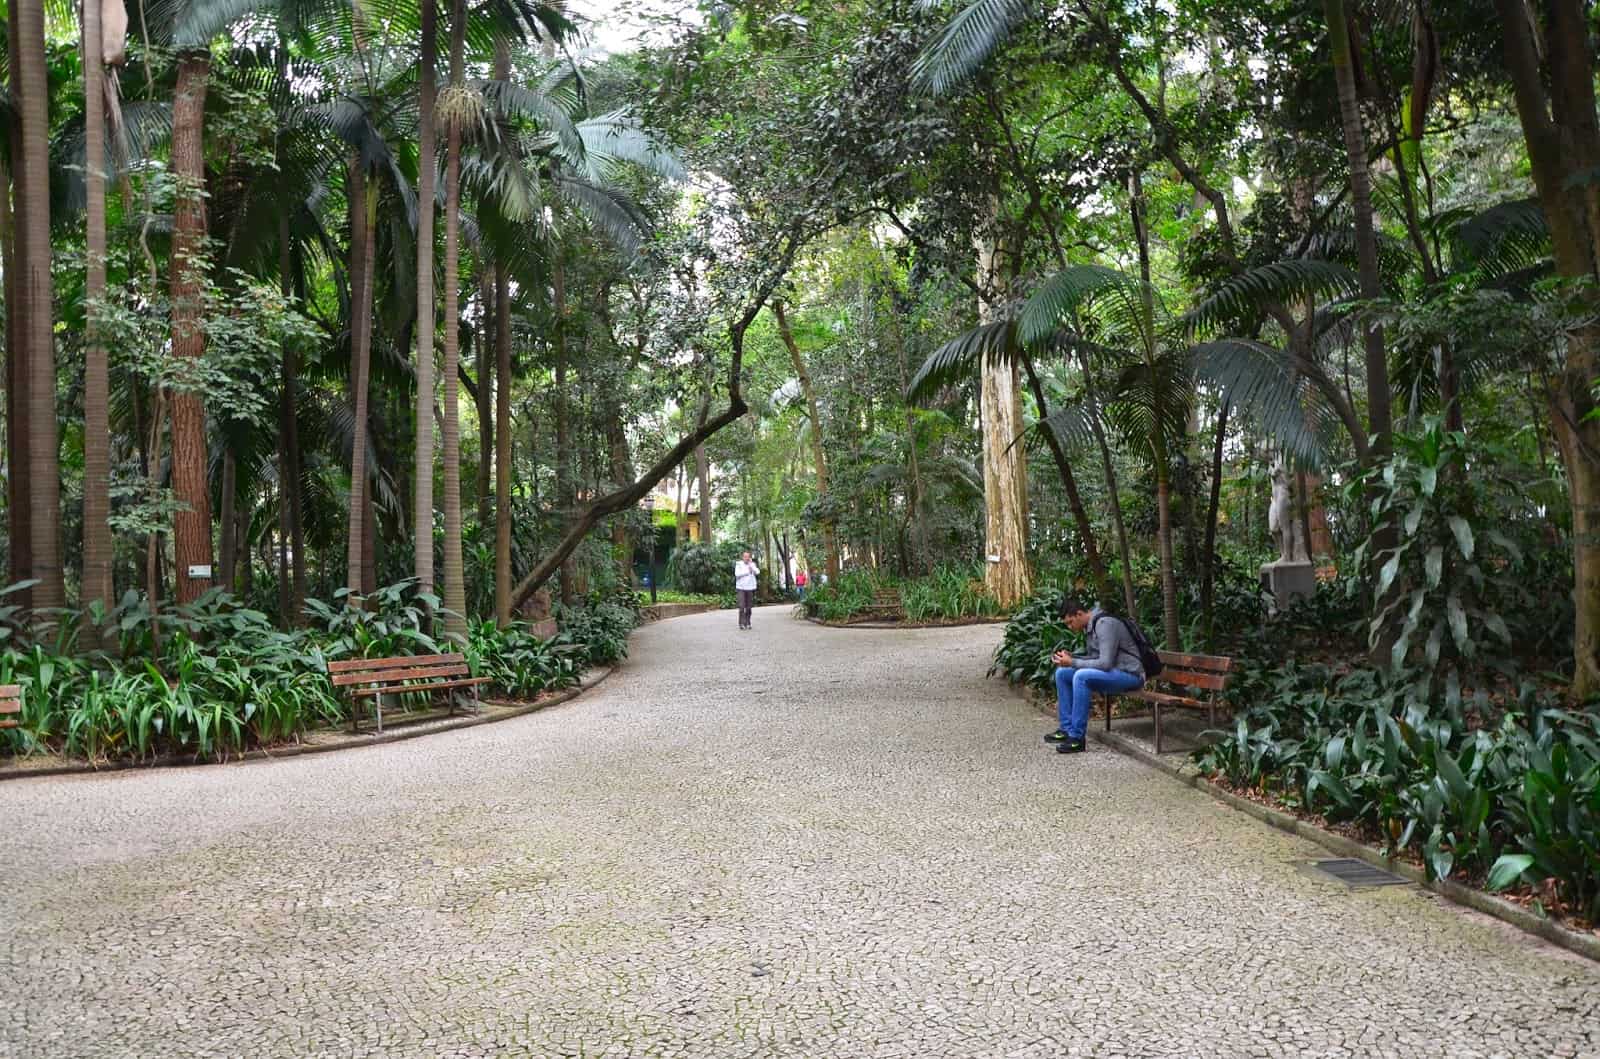 Parque Trianon in São Paulo, Brazil